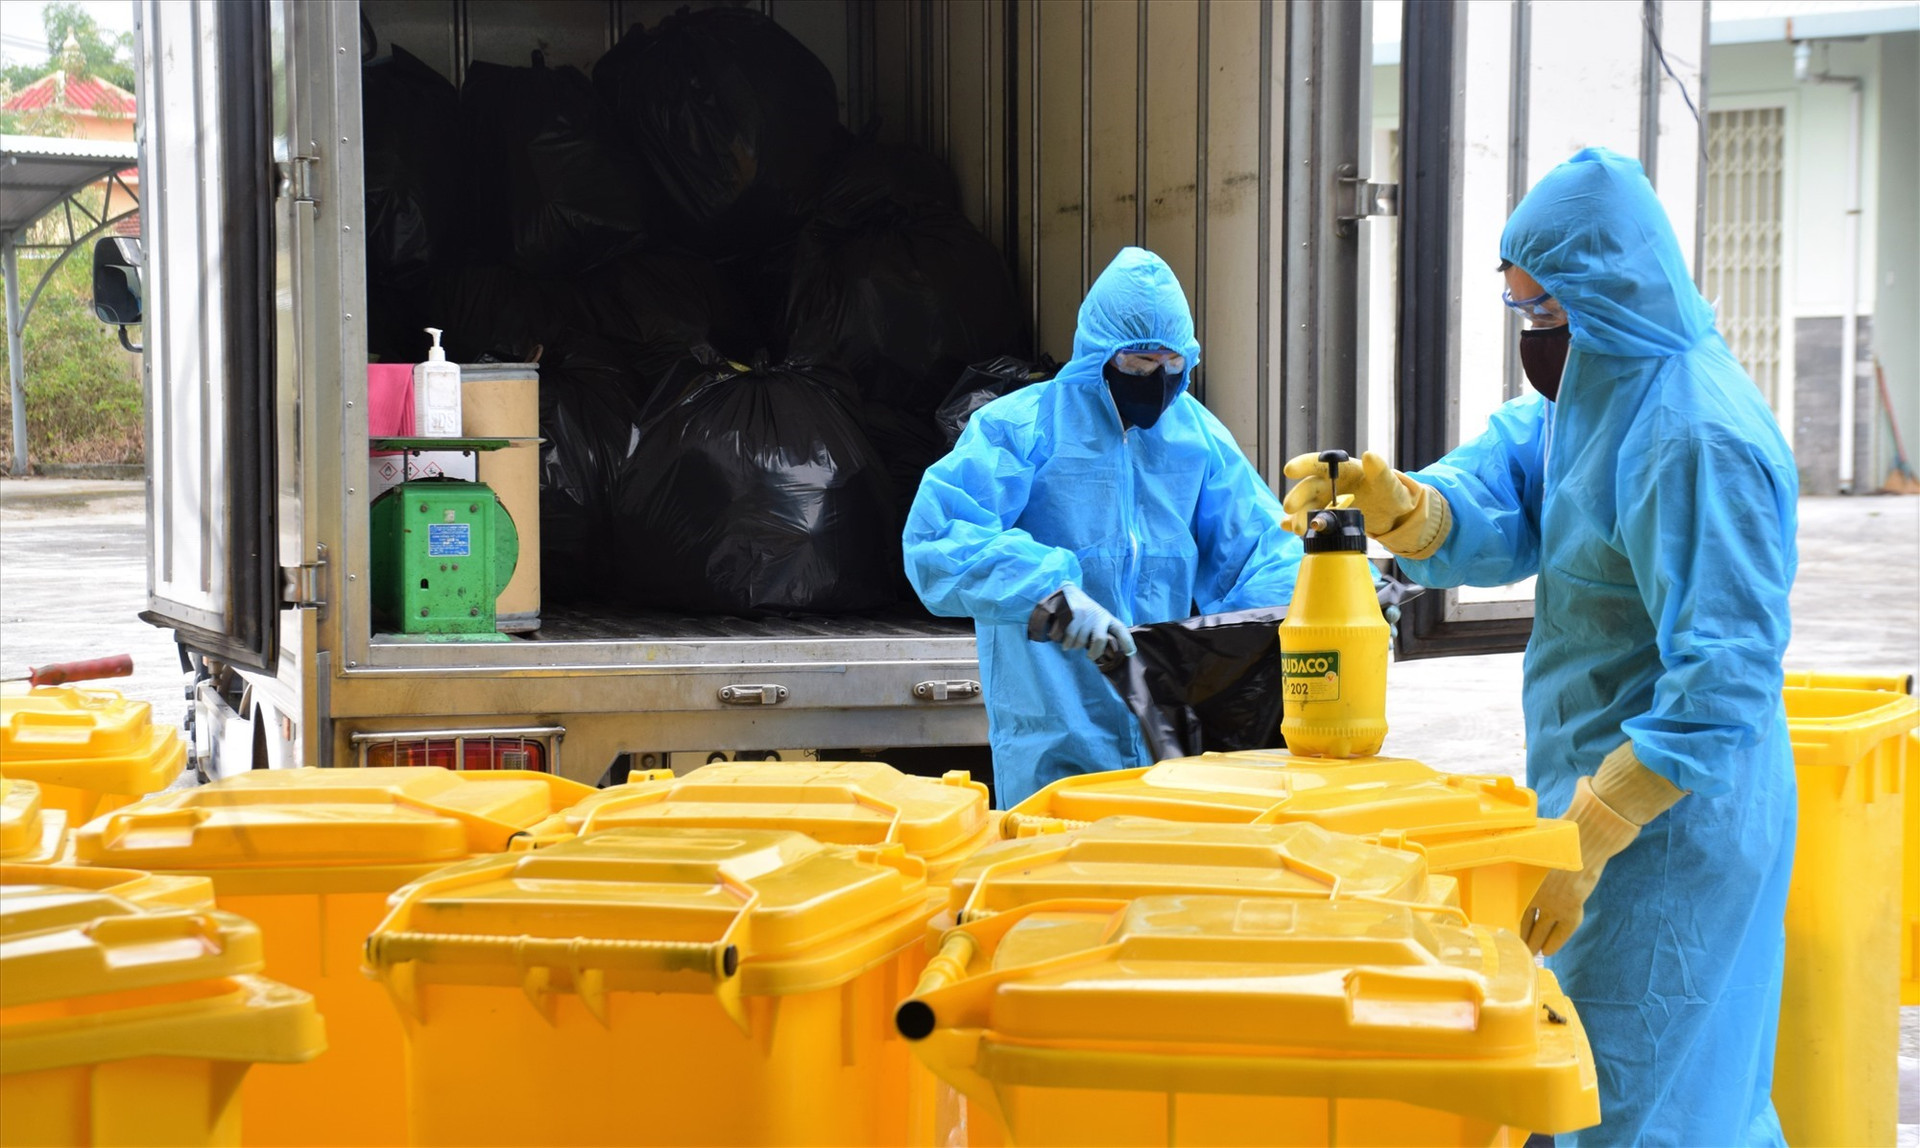 Công nhân mặc đồ bảo hộ khi thu gom rác thải tại khu cách ly tập trung Phòng khám đa khoa Khu công nghiệp Điện Nam Điện Ngọc. Ảnh: THANH THẮNG